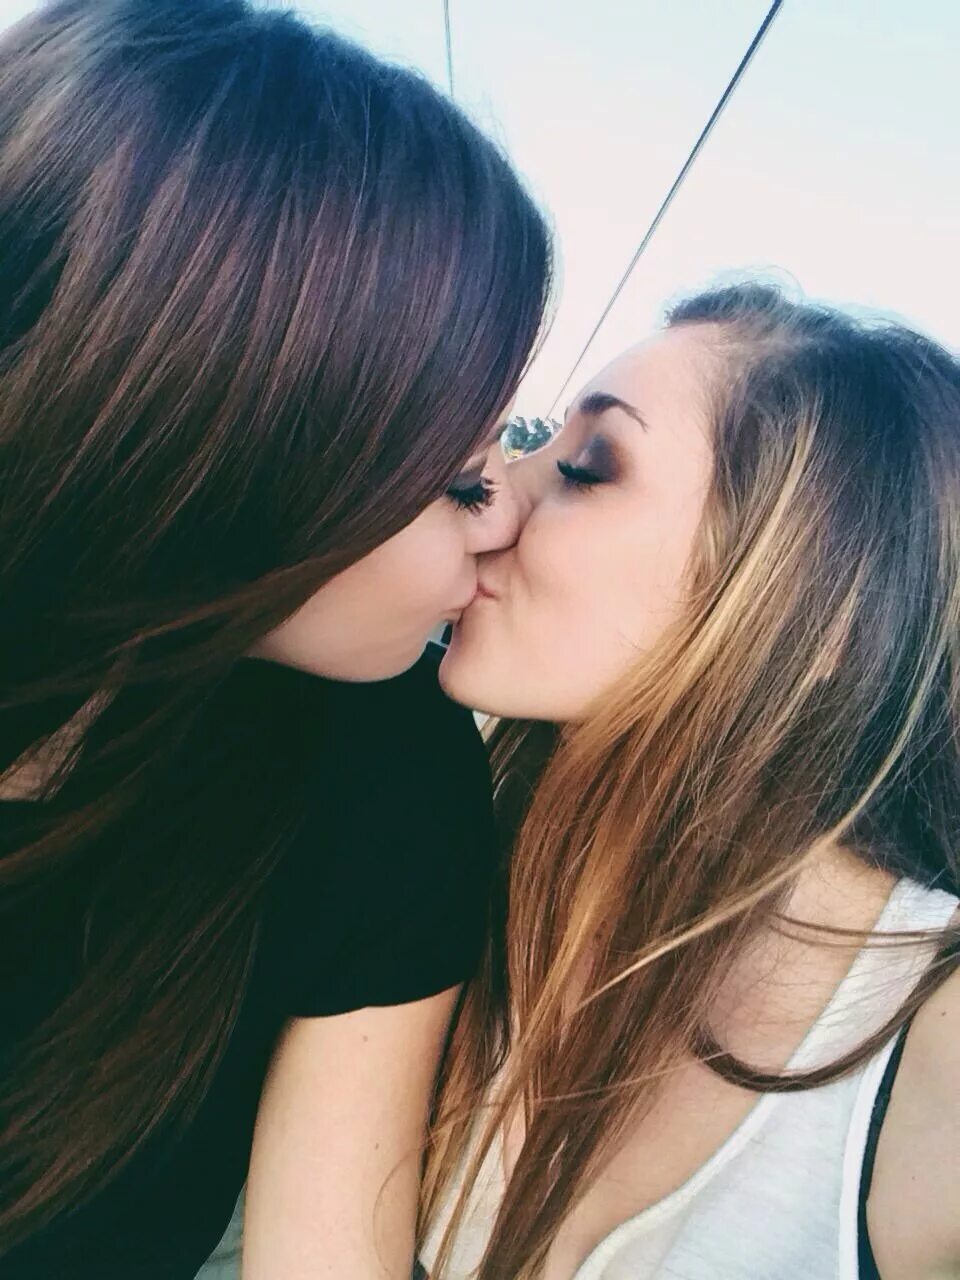 St lesbian. Красивые девушки лизбиянки. Девушки целуются. Самые красивые девочки лесби. Несовершеннолетние лесби.